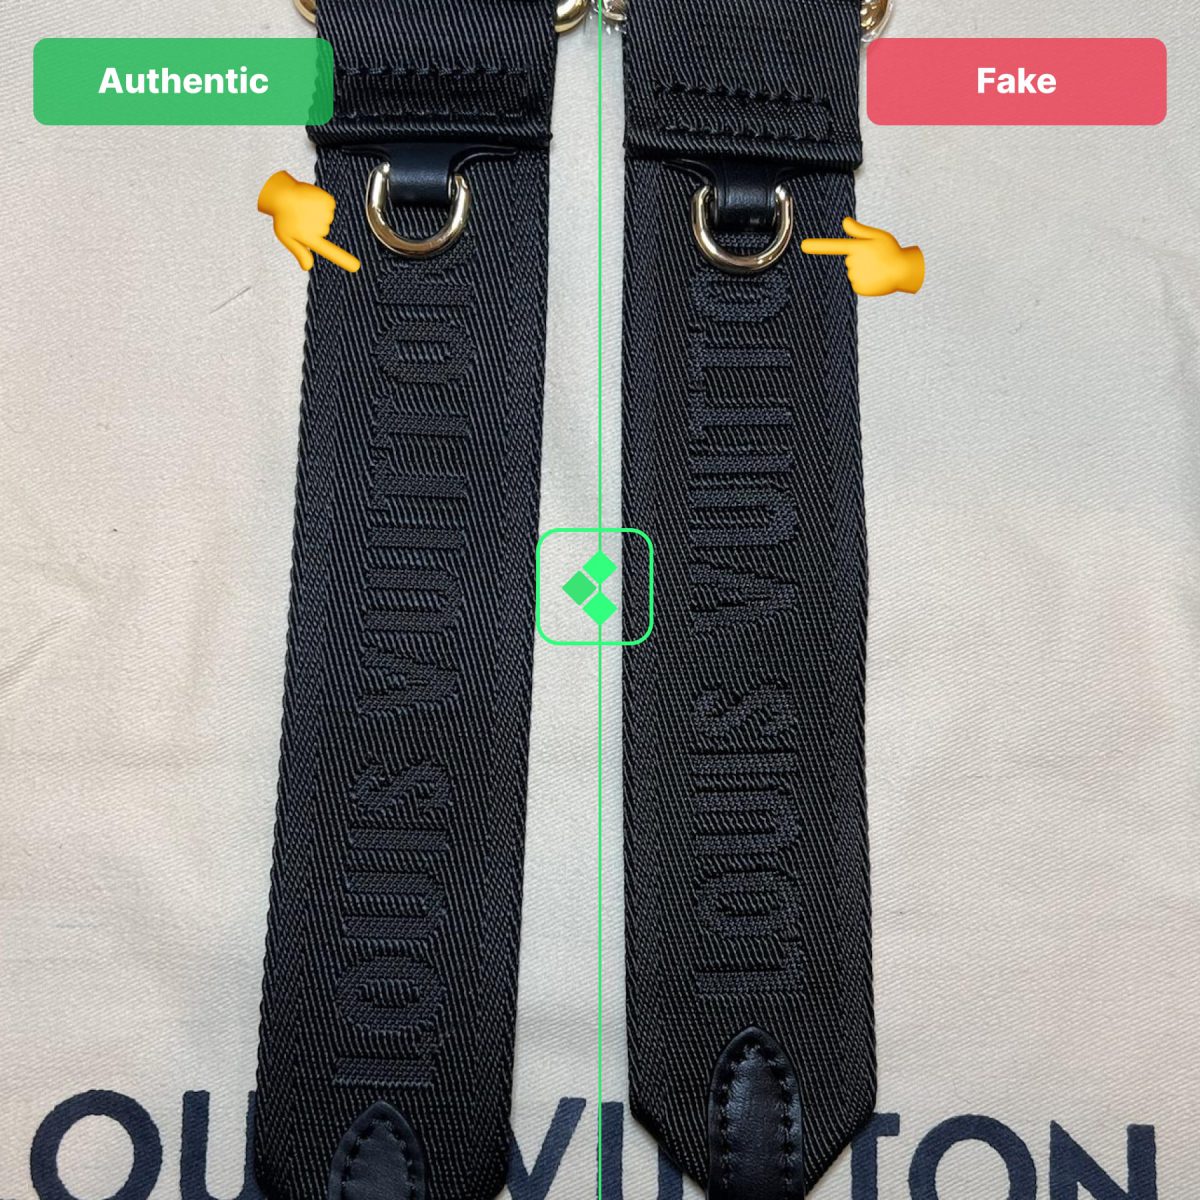 Louis Vuitton Bag Fake Vs Real Belt